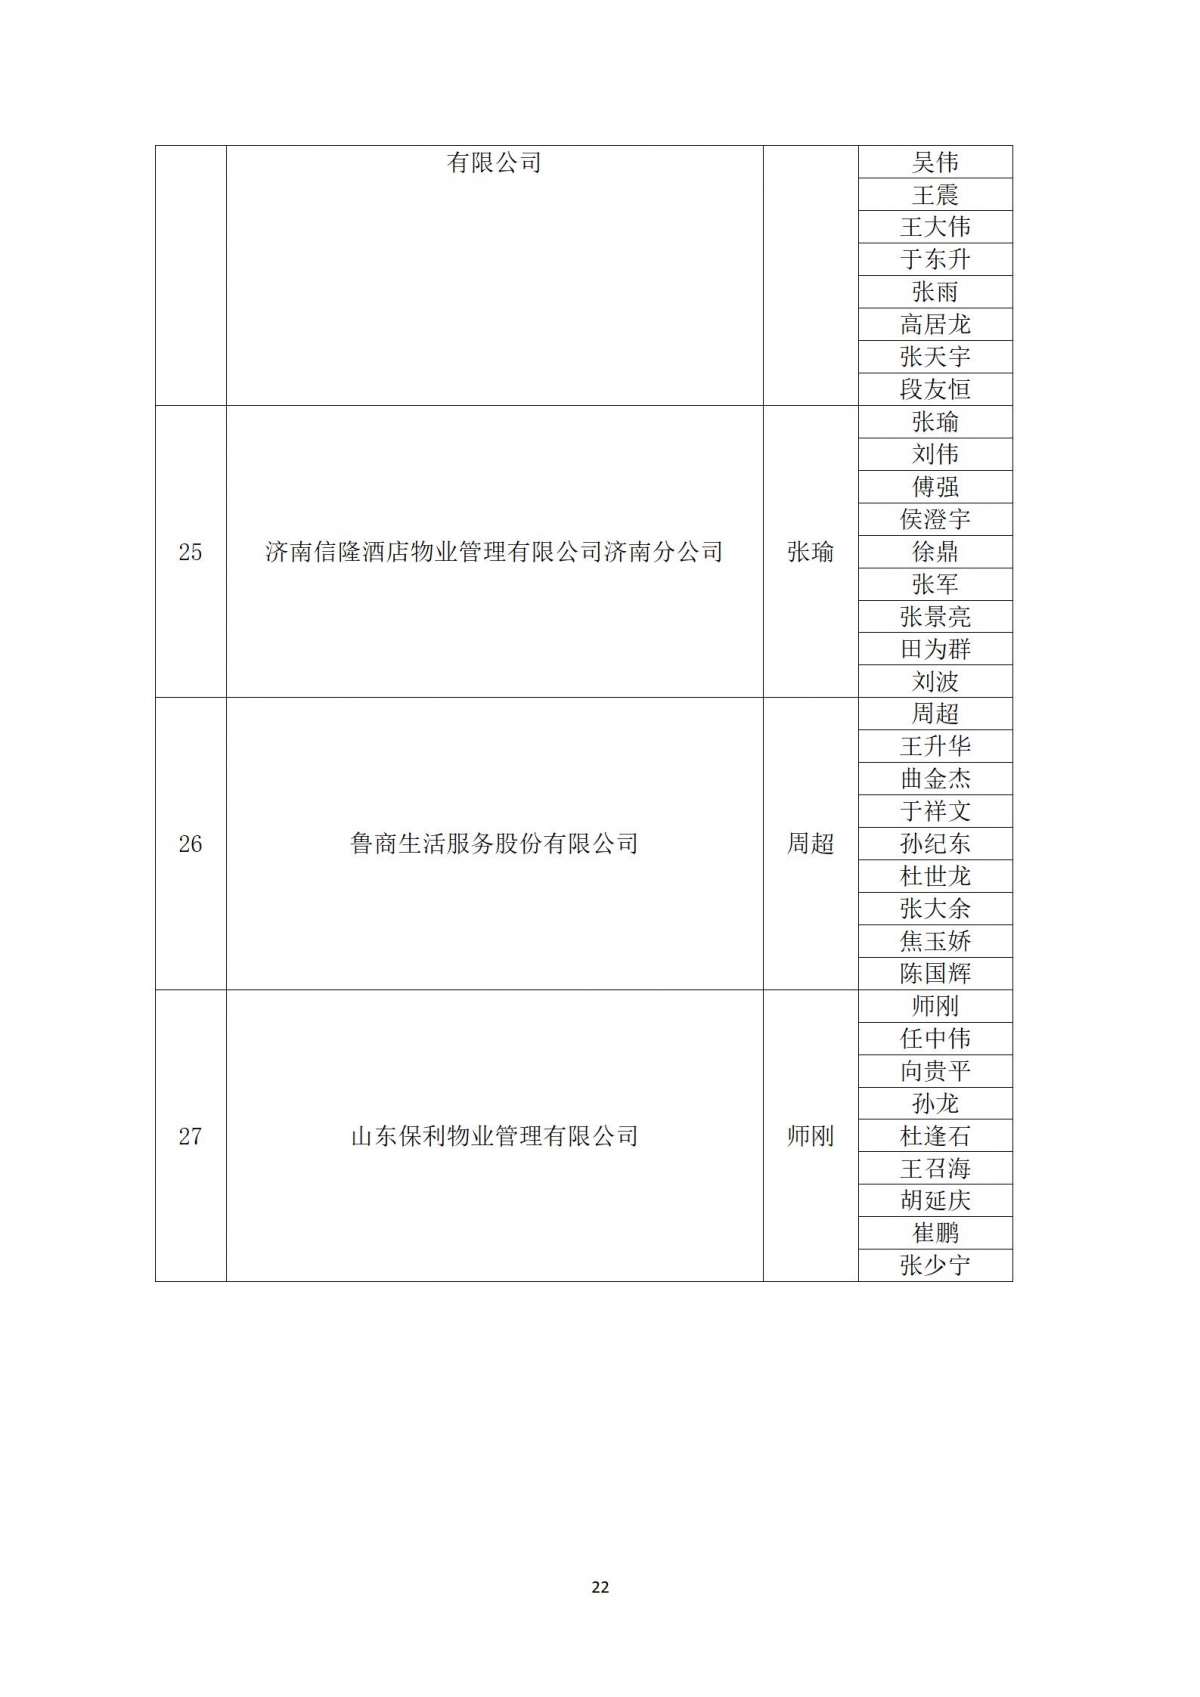 关于“天城杯”第七届济南市物业服务行业职业技能竞赛选手名单的公示_22